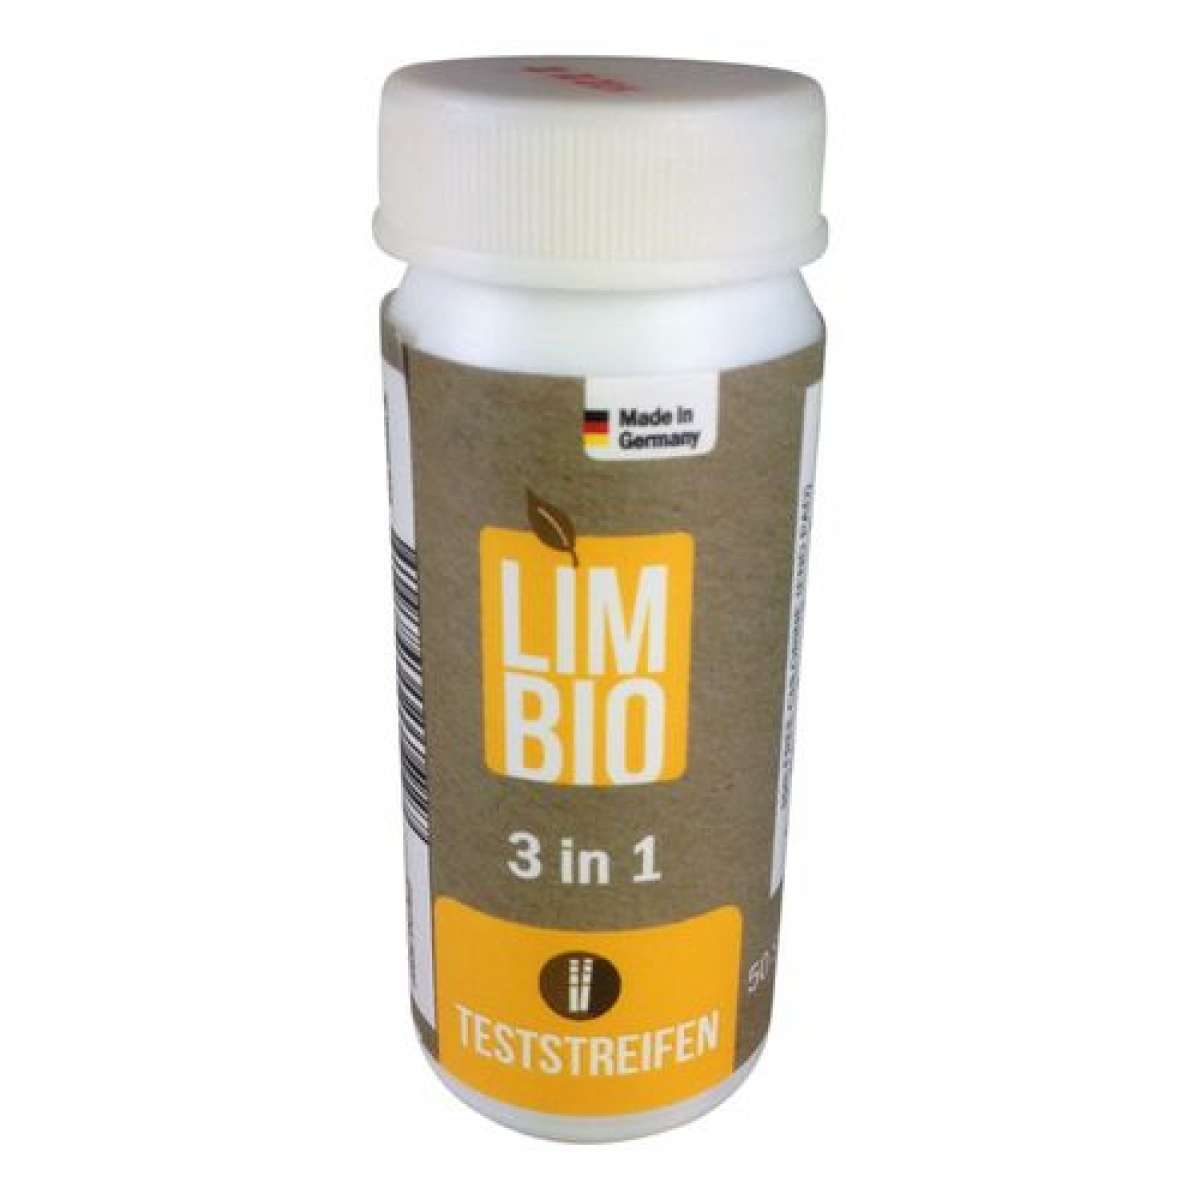 LIMBIO - 3 in 1 Teststreifen